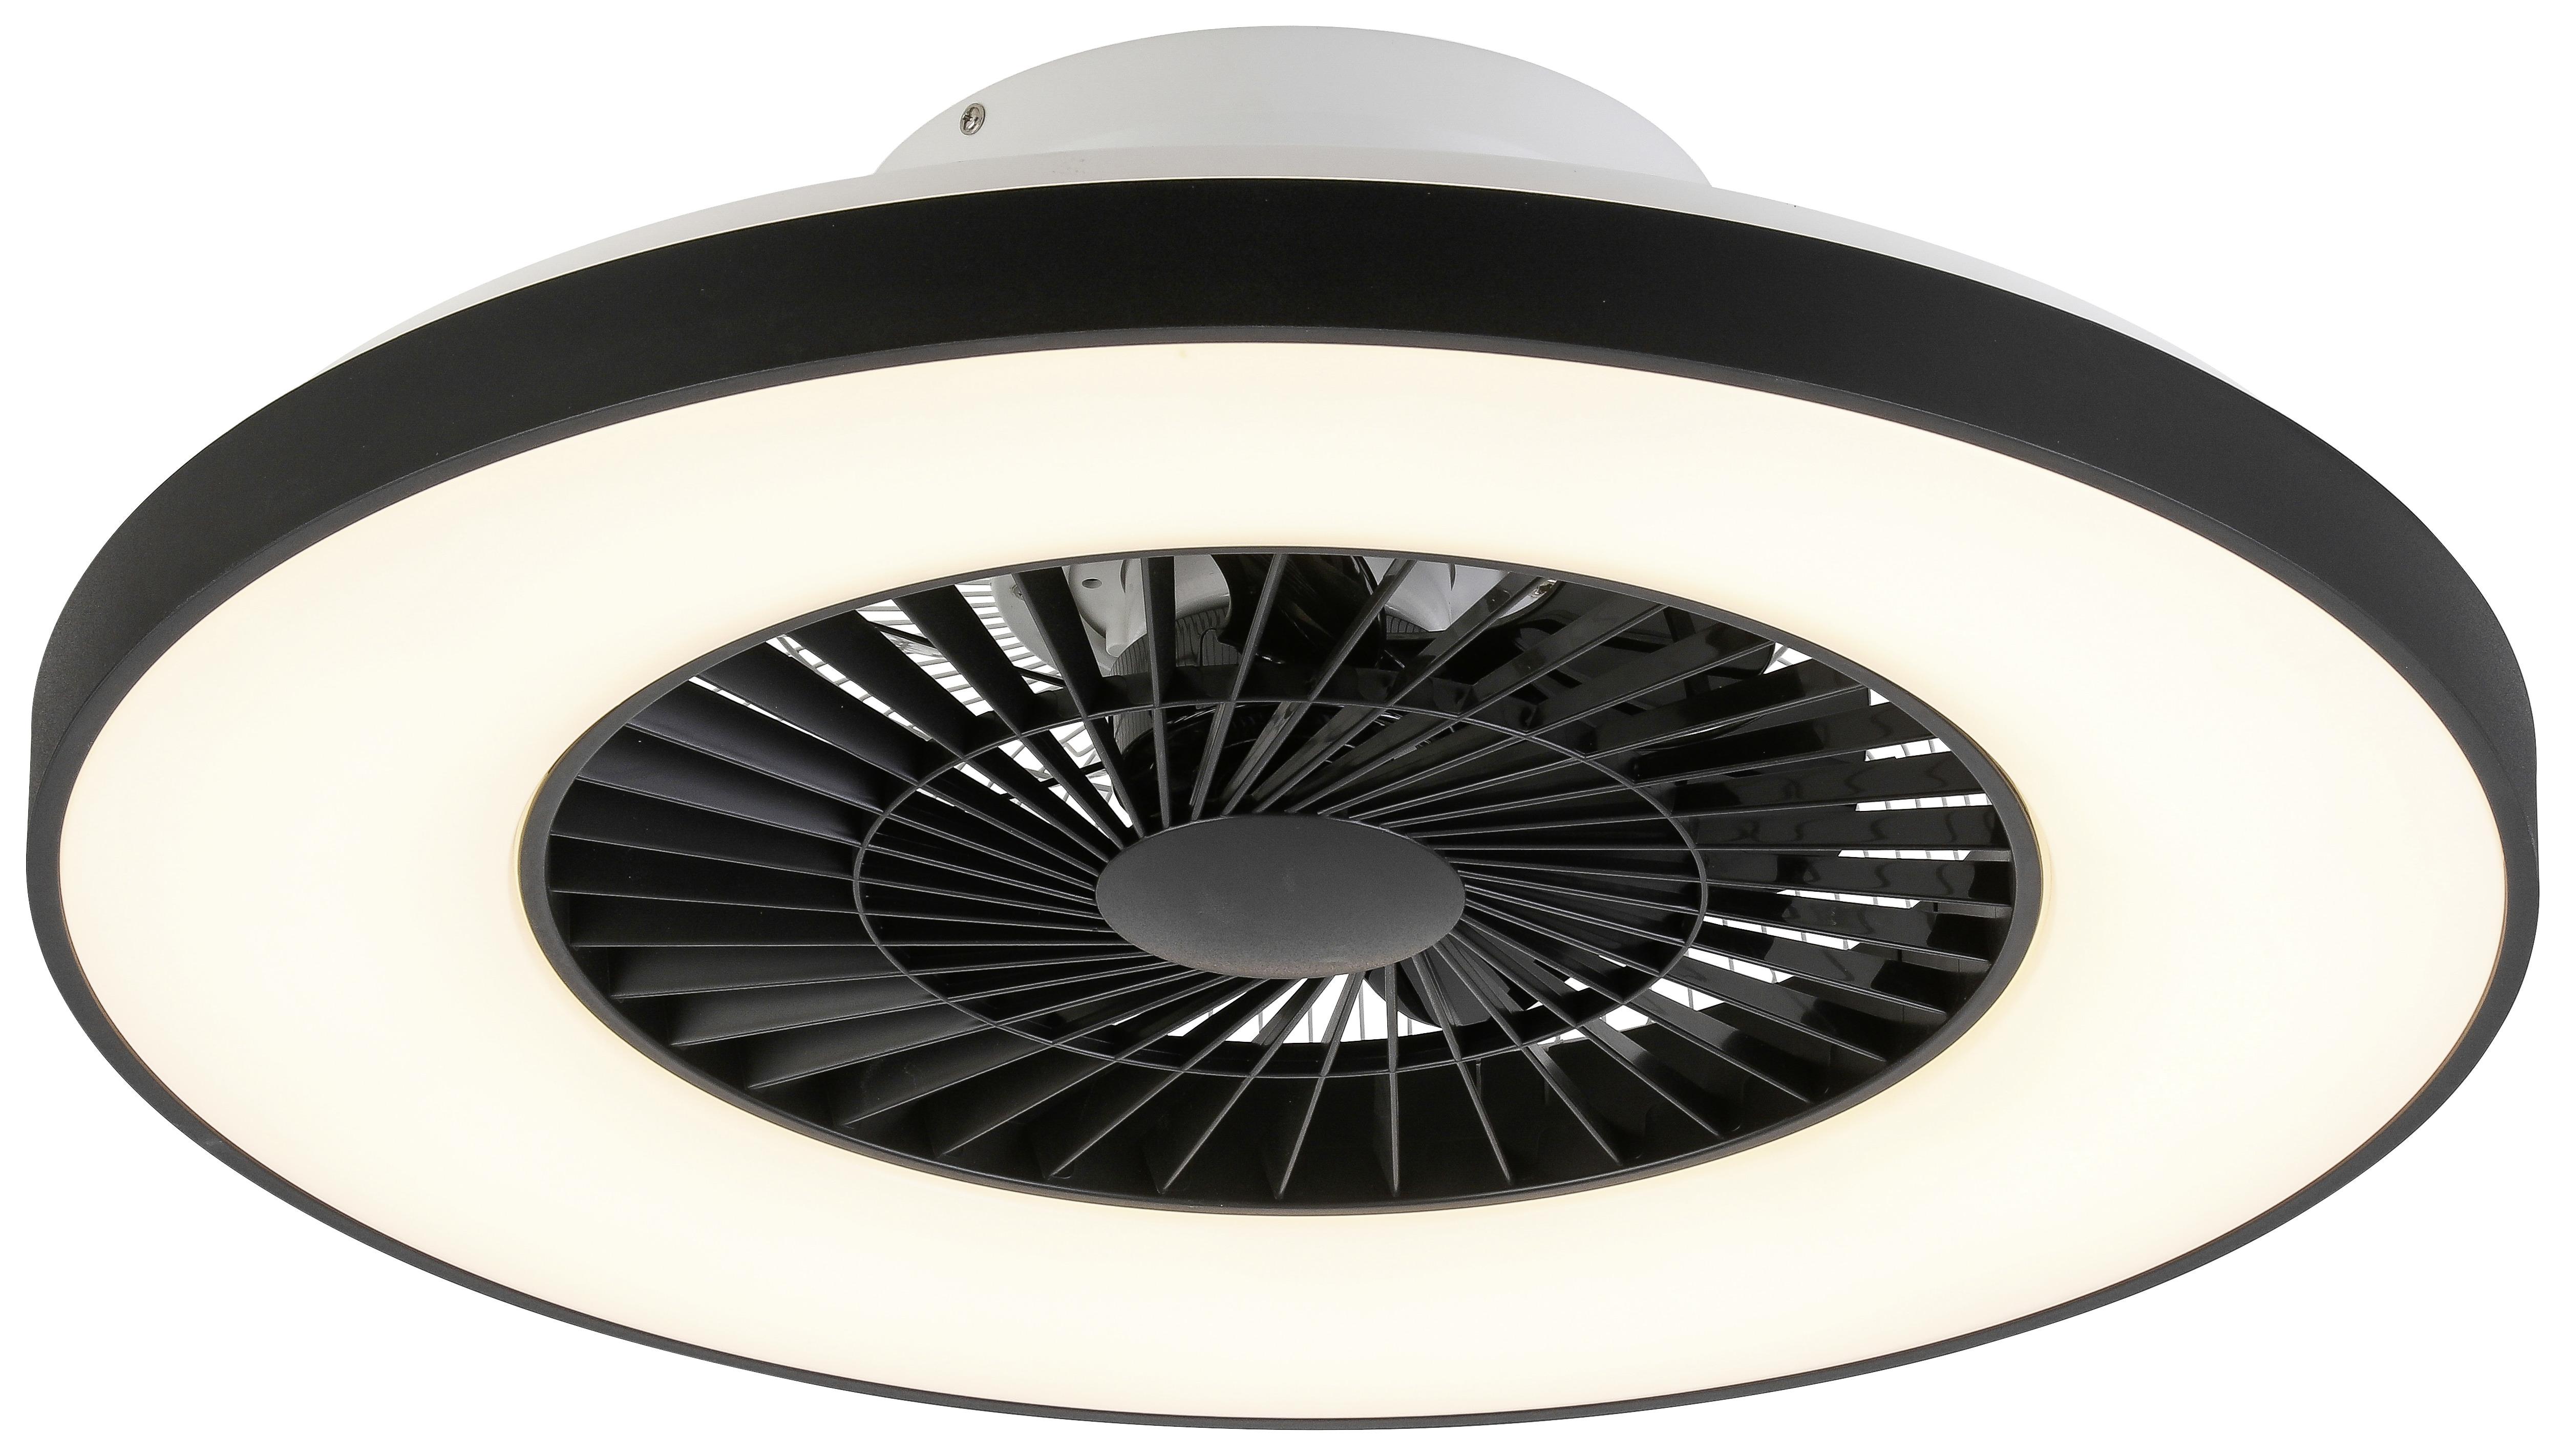 Stropní Ventilátor Ukas, 60/19cm - bílá/černá, Moderní, kov/plast (59,5/20,5cm) - Premium Living